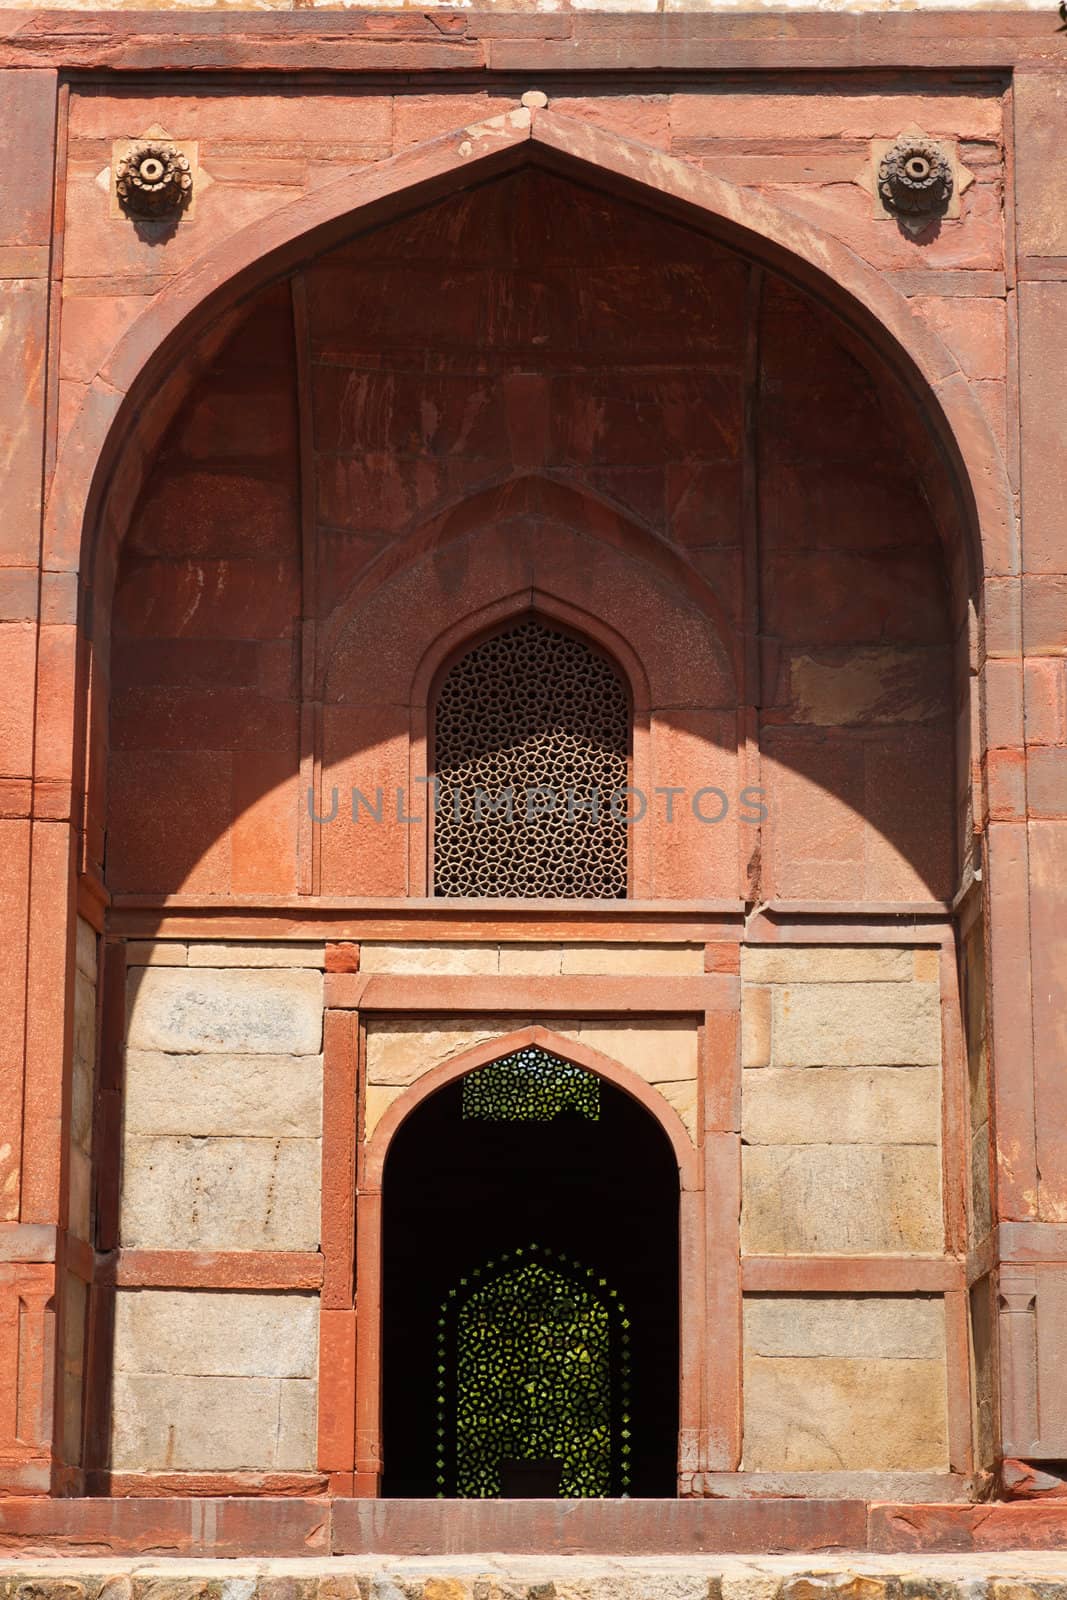 Barber Tomb in Humayun Tomb complex. Delhi, India